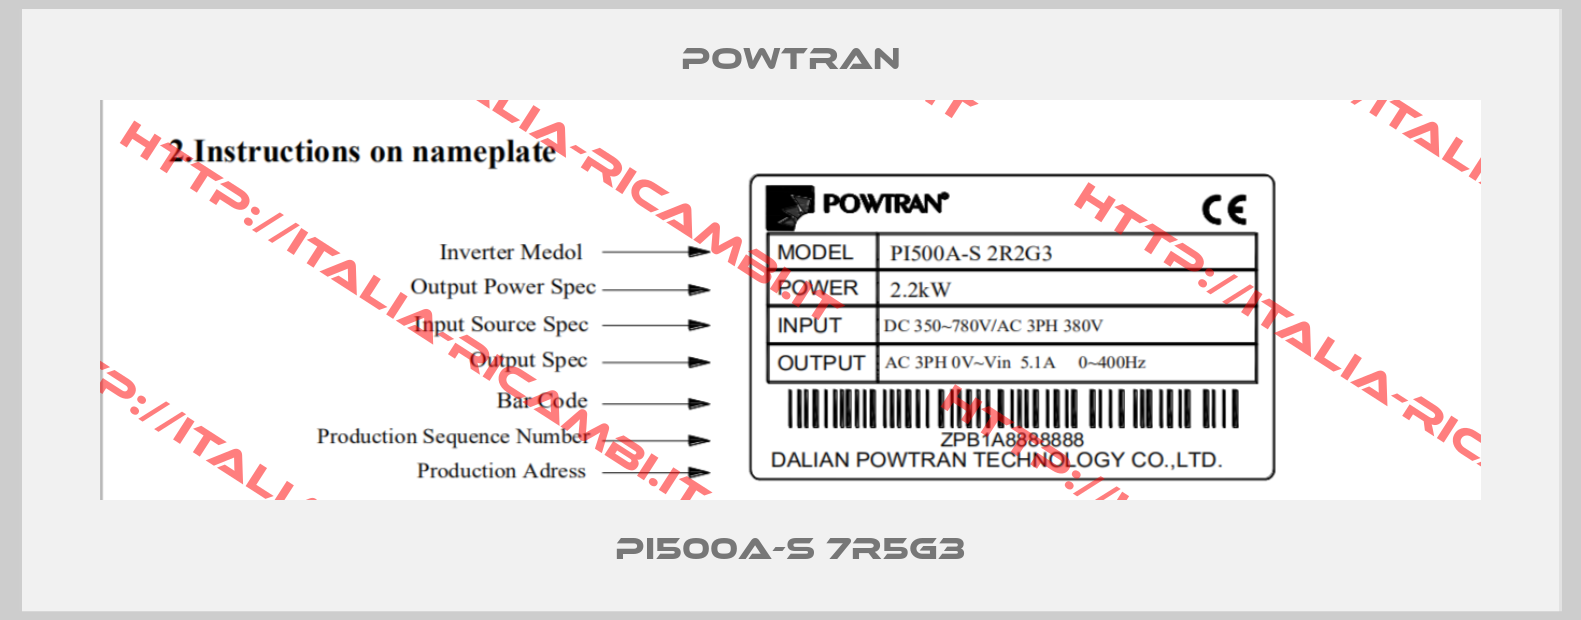 Powtran-PI500A-S 7R5G3